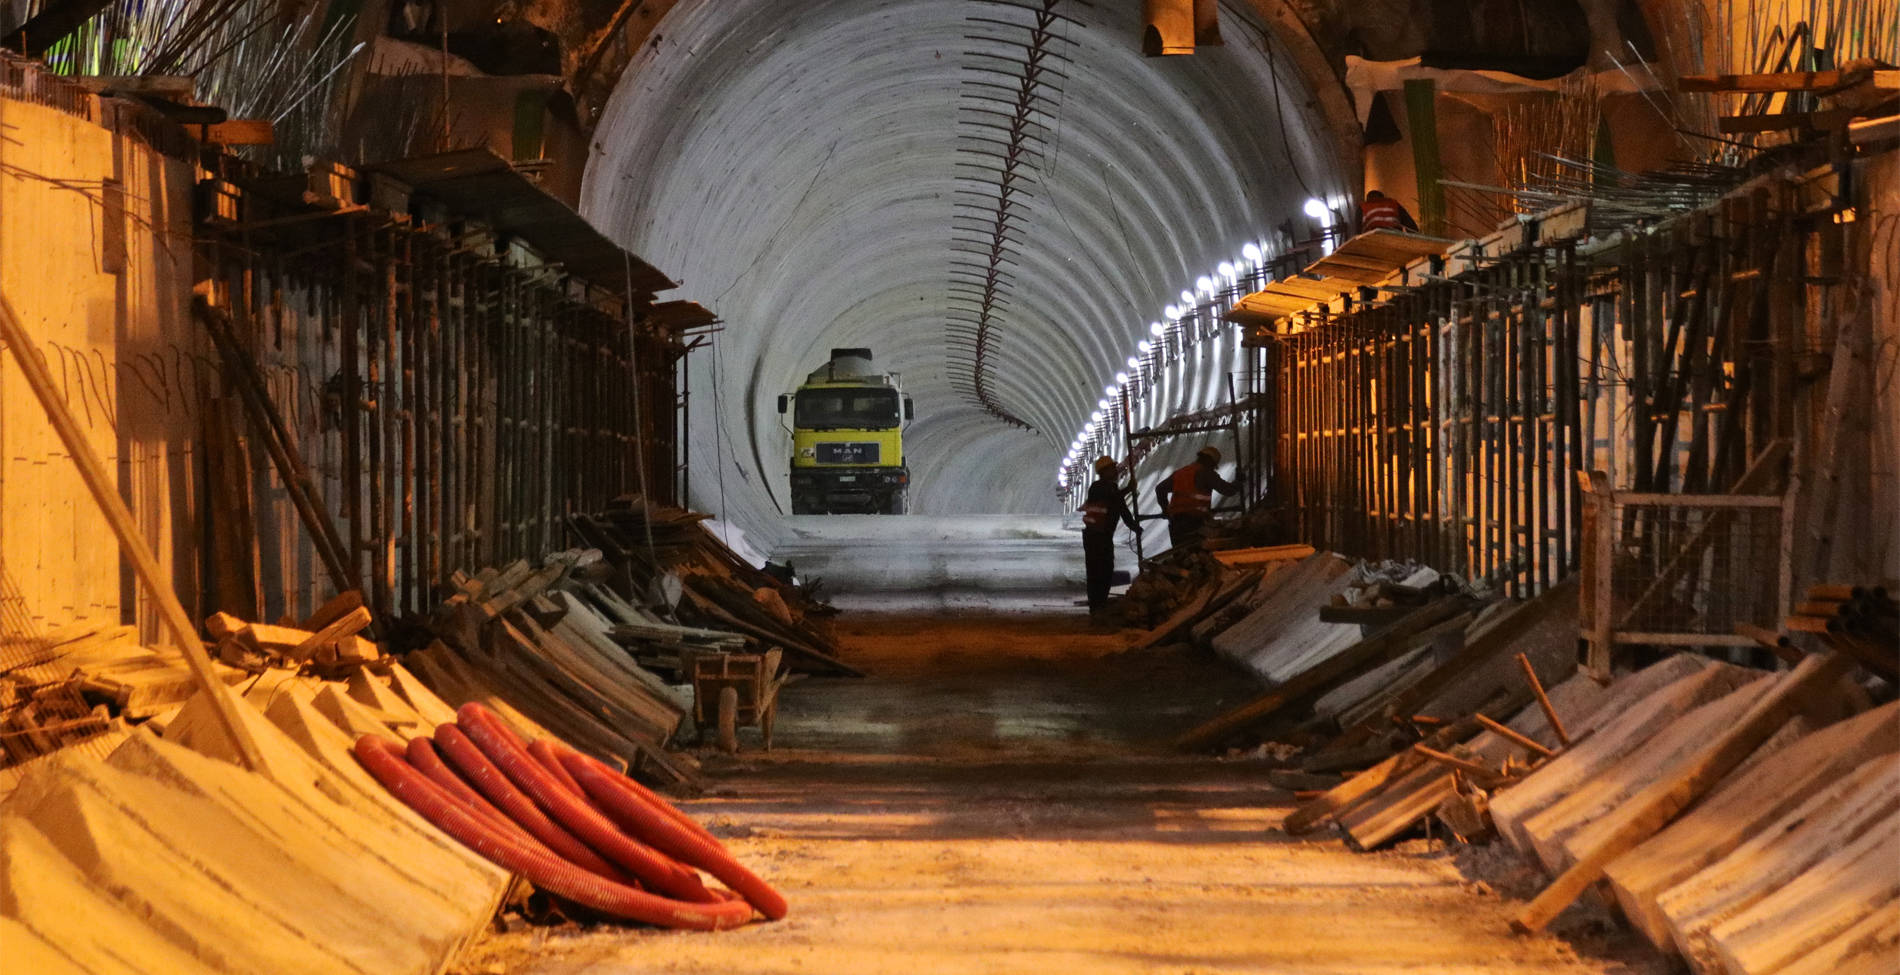 Έτσι είναι ο υπόγειος κόσμος του μετρό που επεκτείνεται κάτω από τα πόδια μας